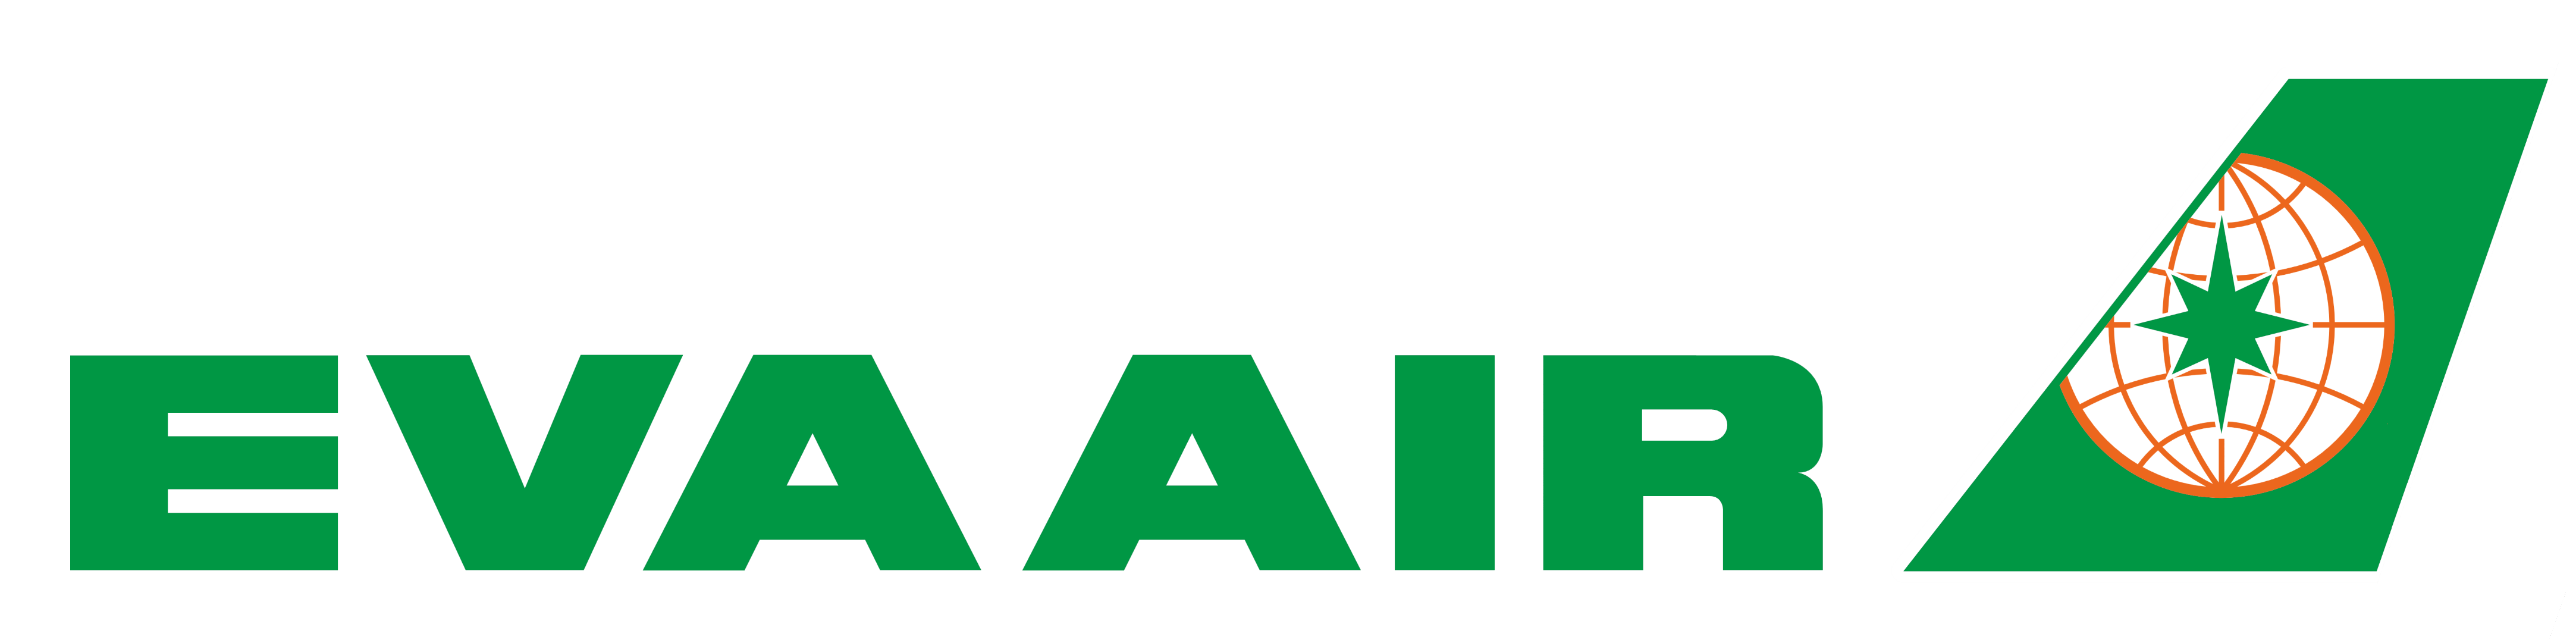 Eva Air-logo